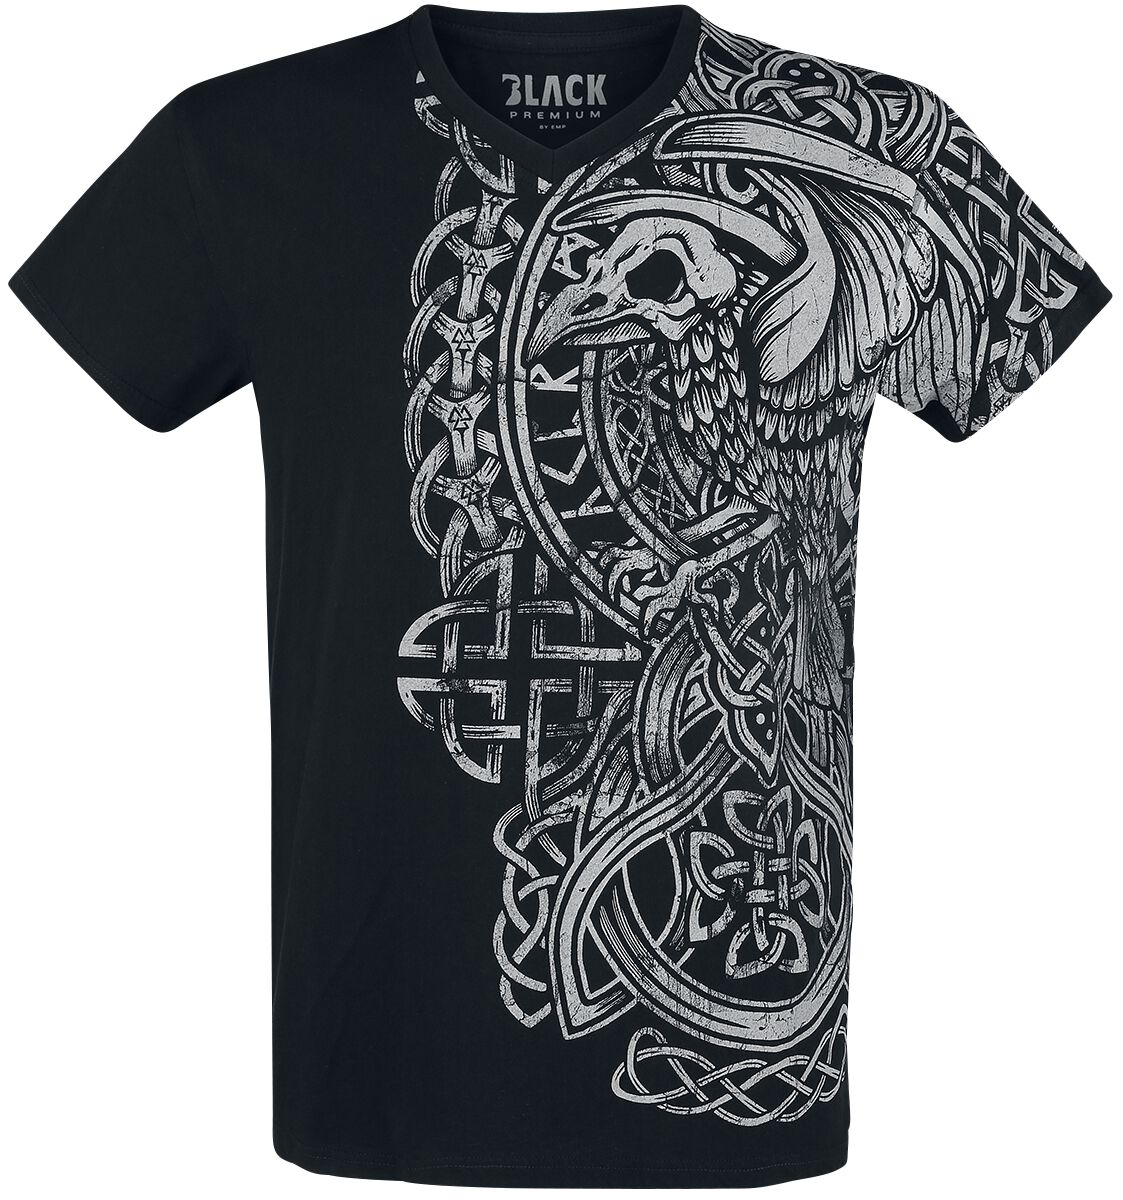 Black Premium by EMP T-Shirt - schwarzes T-Shirt mit Print und V-Ausschnitt - S bis 5XL - für Männer - Größe 3XL - schwarz